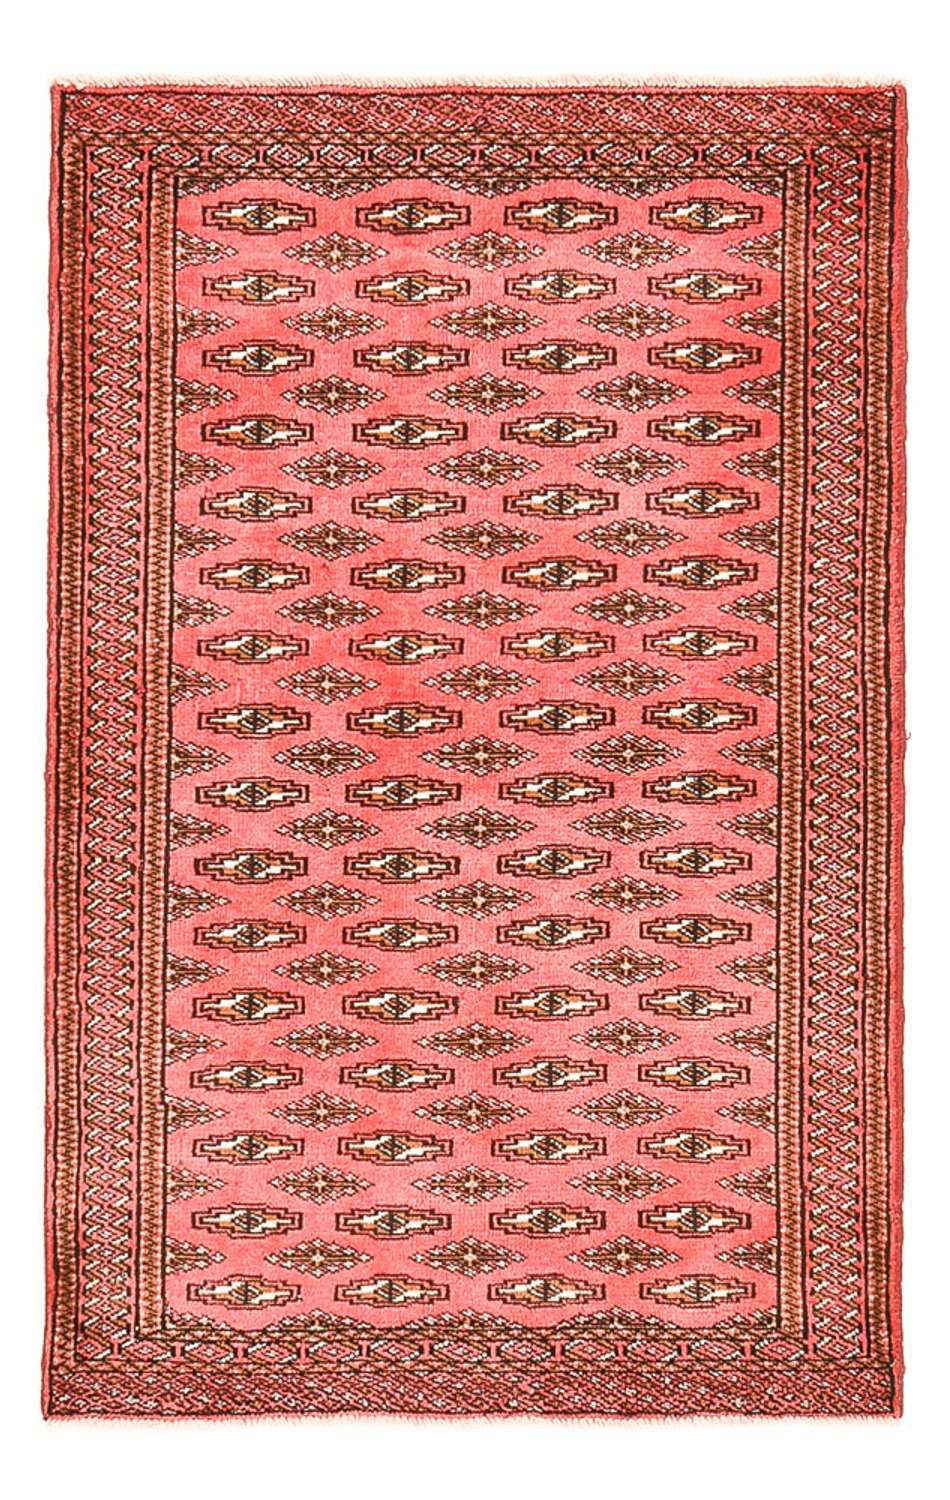 Dywan turkmeński - 147 x 93 cm - czerwony